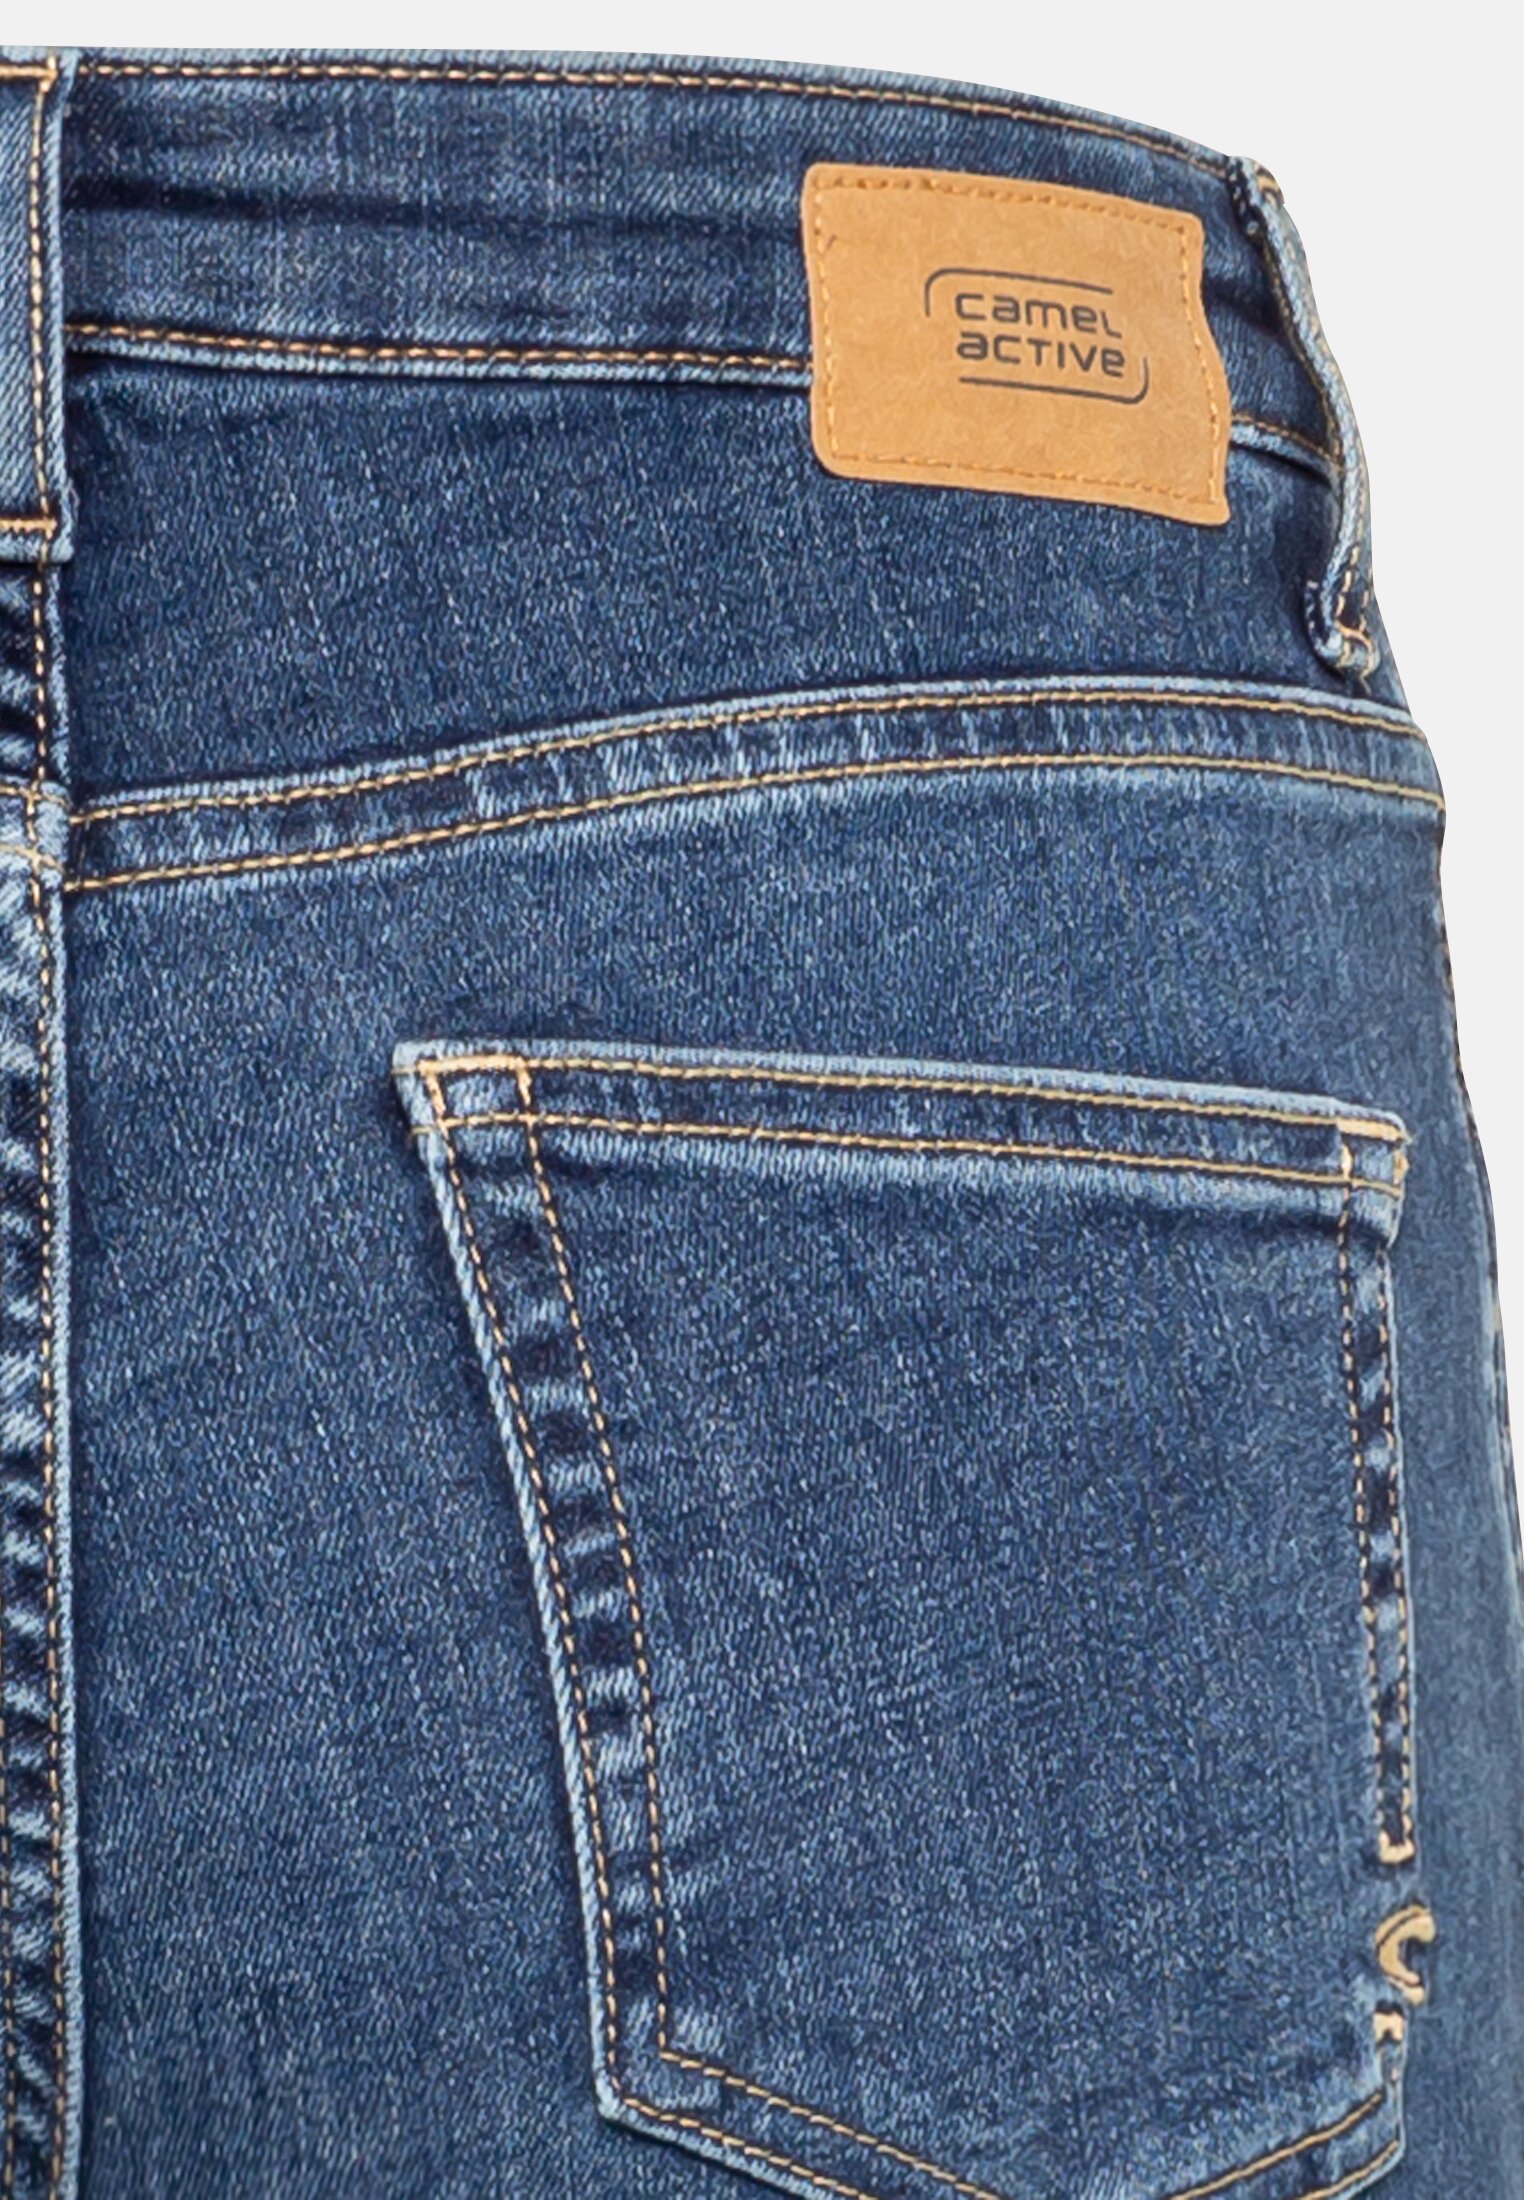 5-pocket jeans active Blue camel Damen 26/30 for | | in